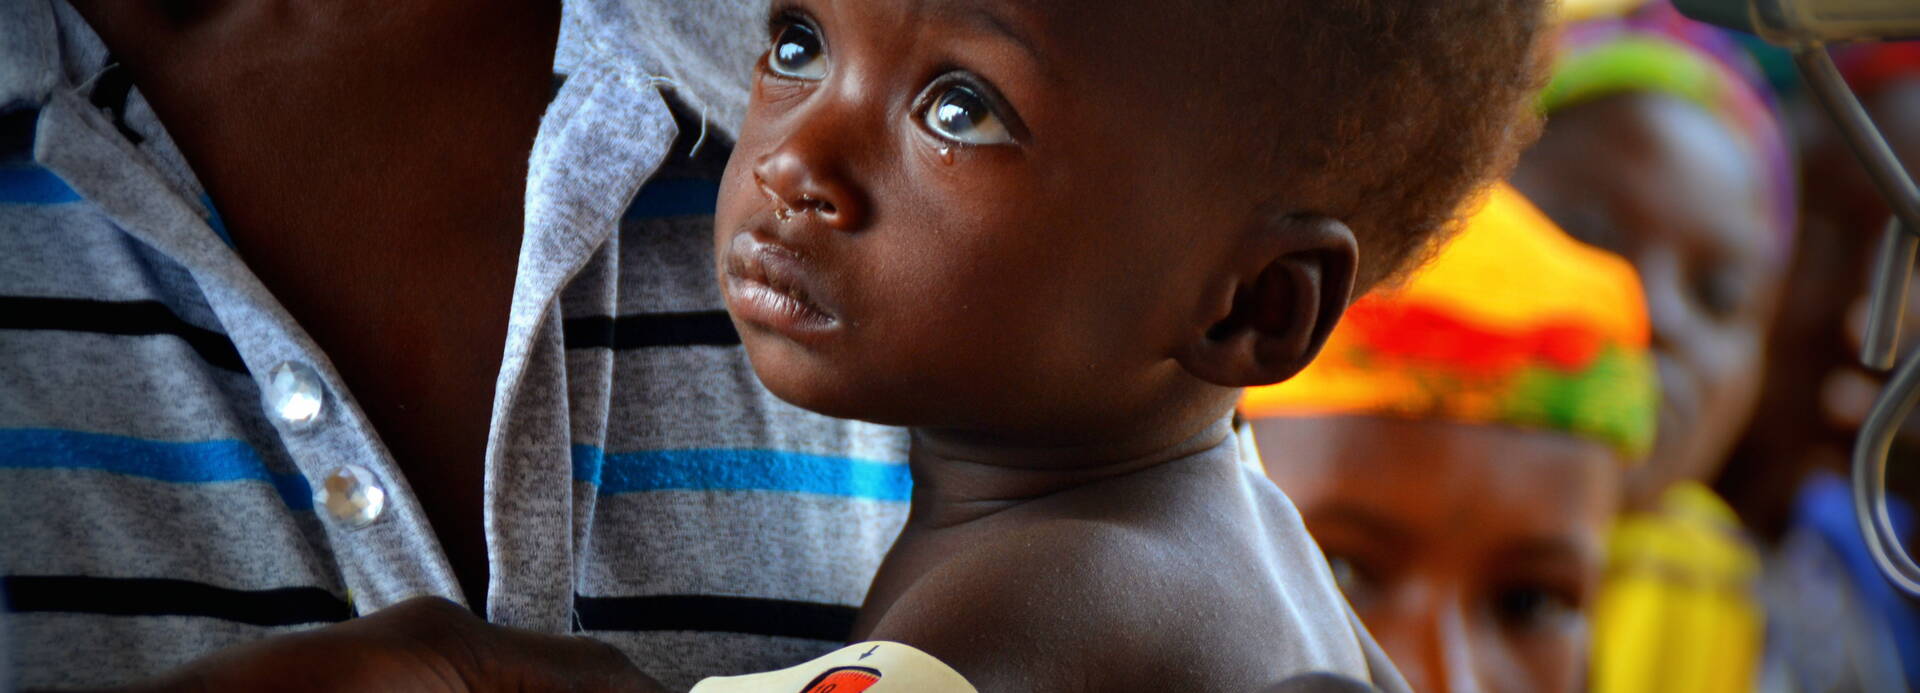 Säugling mit MUAC-Band Diagnose akute Mangelernährung